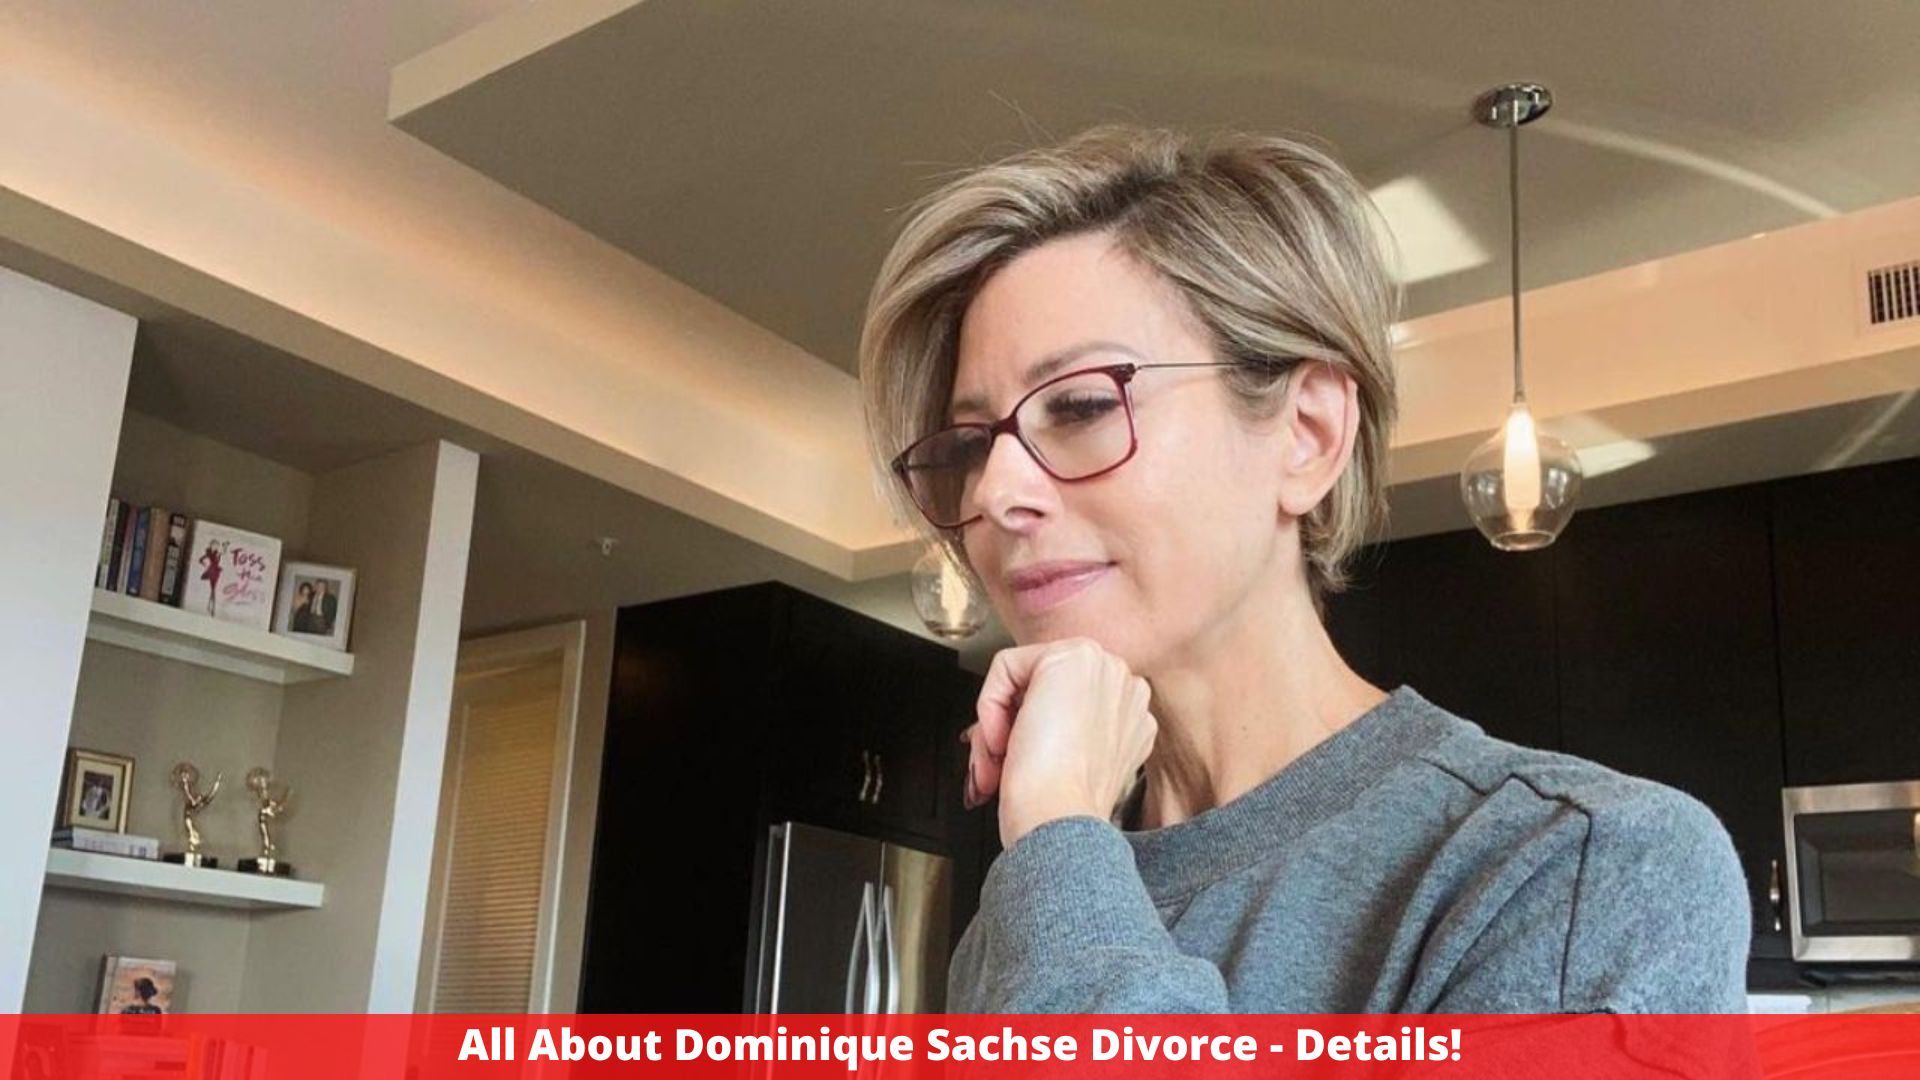 All About Dominique Sachse Divorce - Details!